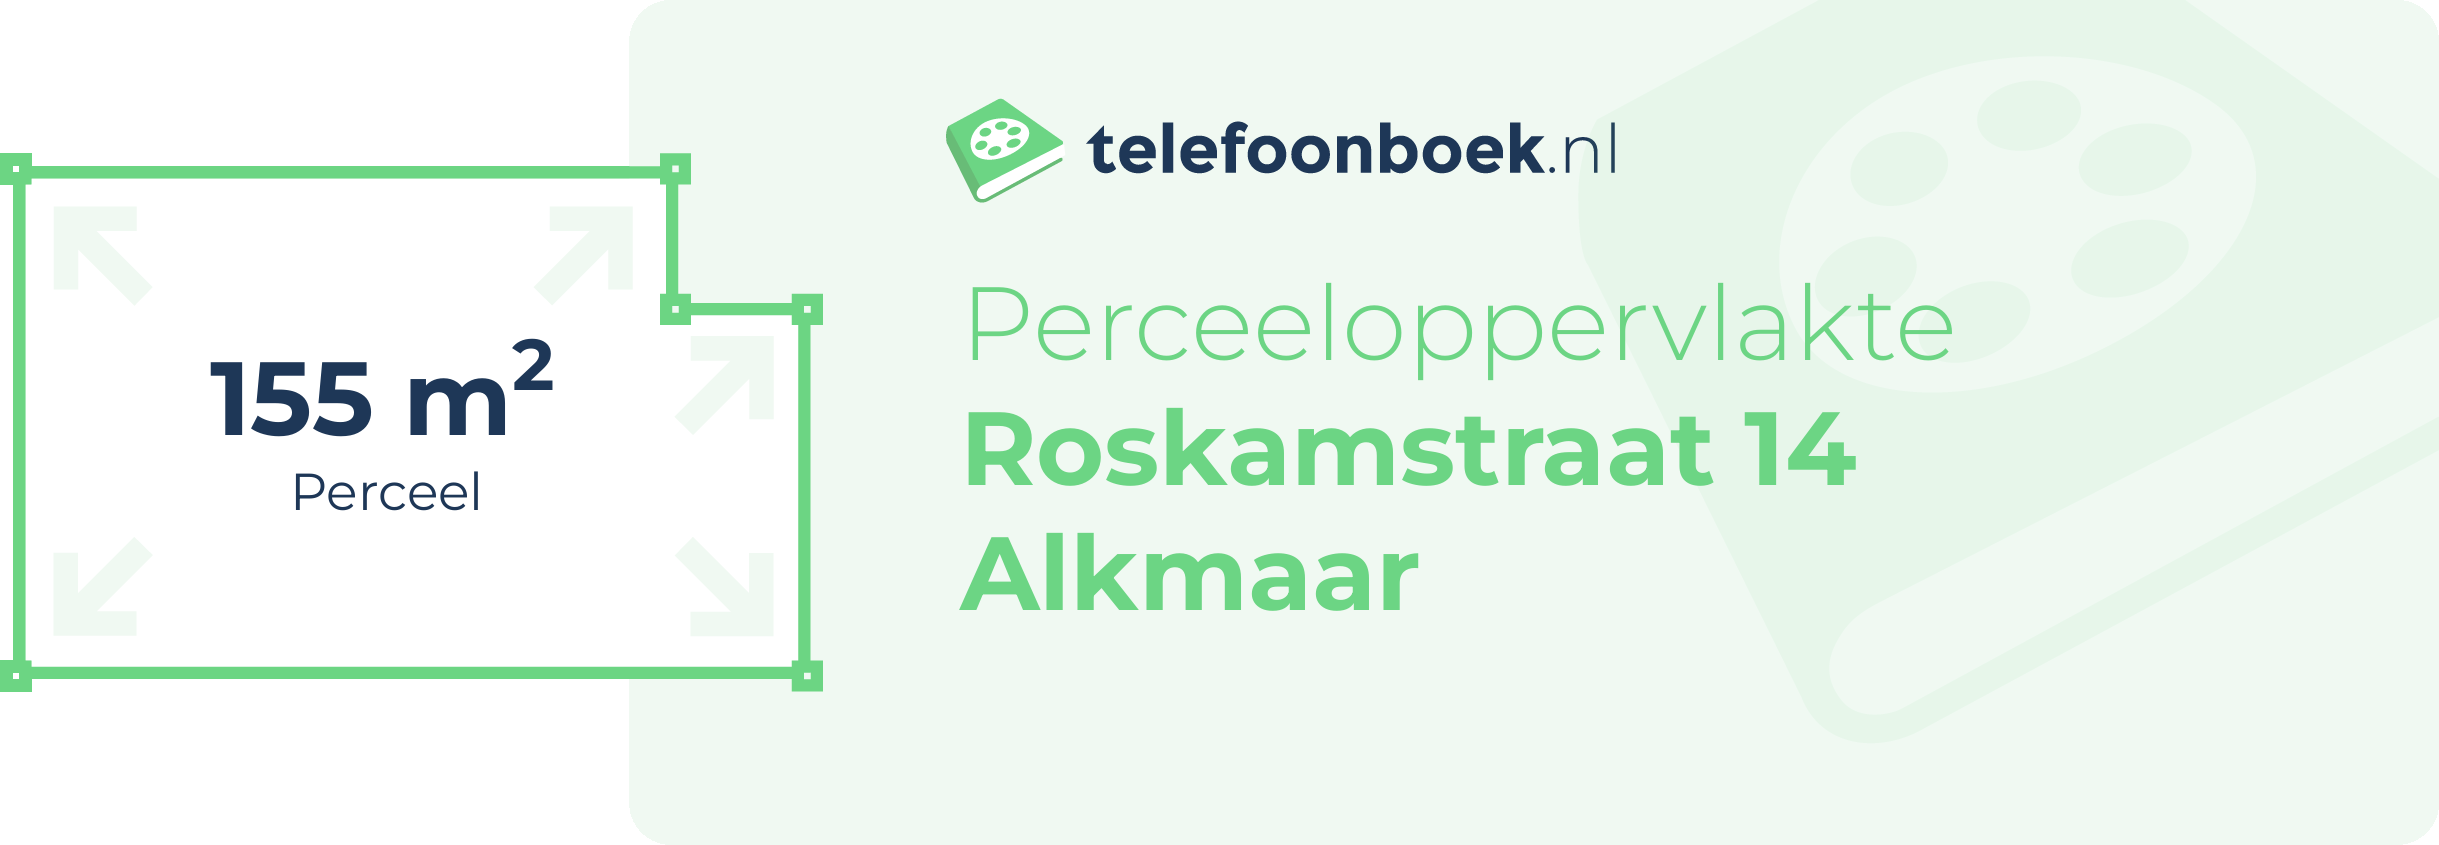 Perceeloppervlakte Roskamstraat 14 Alkmaar